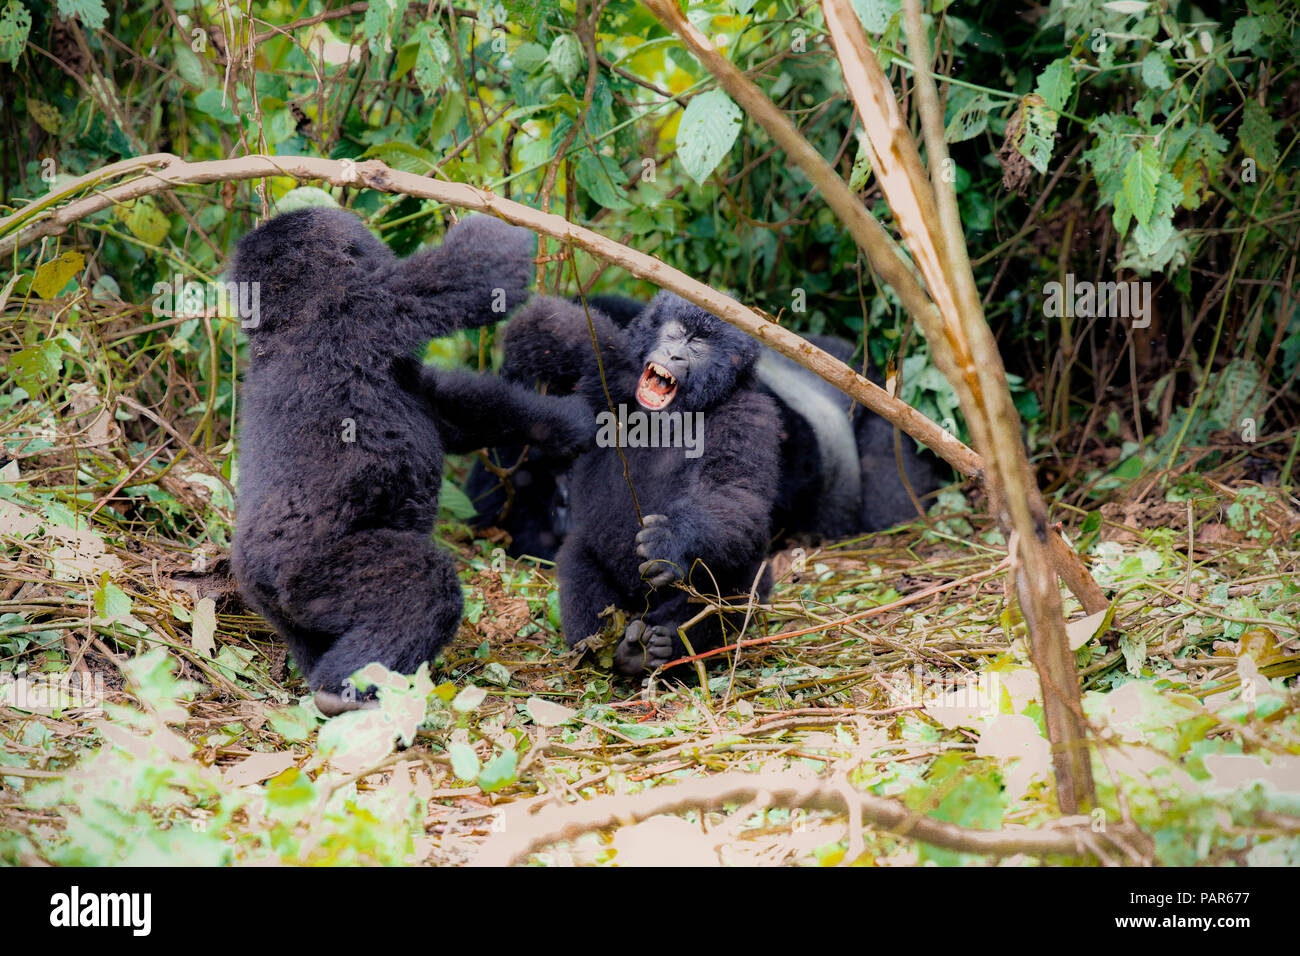 Africa, Repubblica Democratica del Congo, giovani i gorilla di montagna a giocare nella giungla Foto Stock